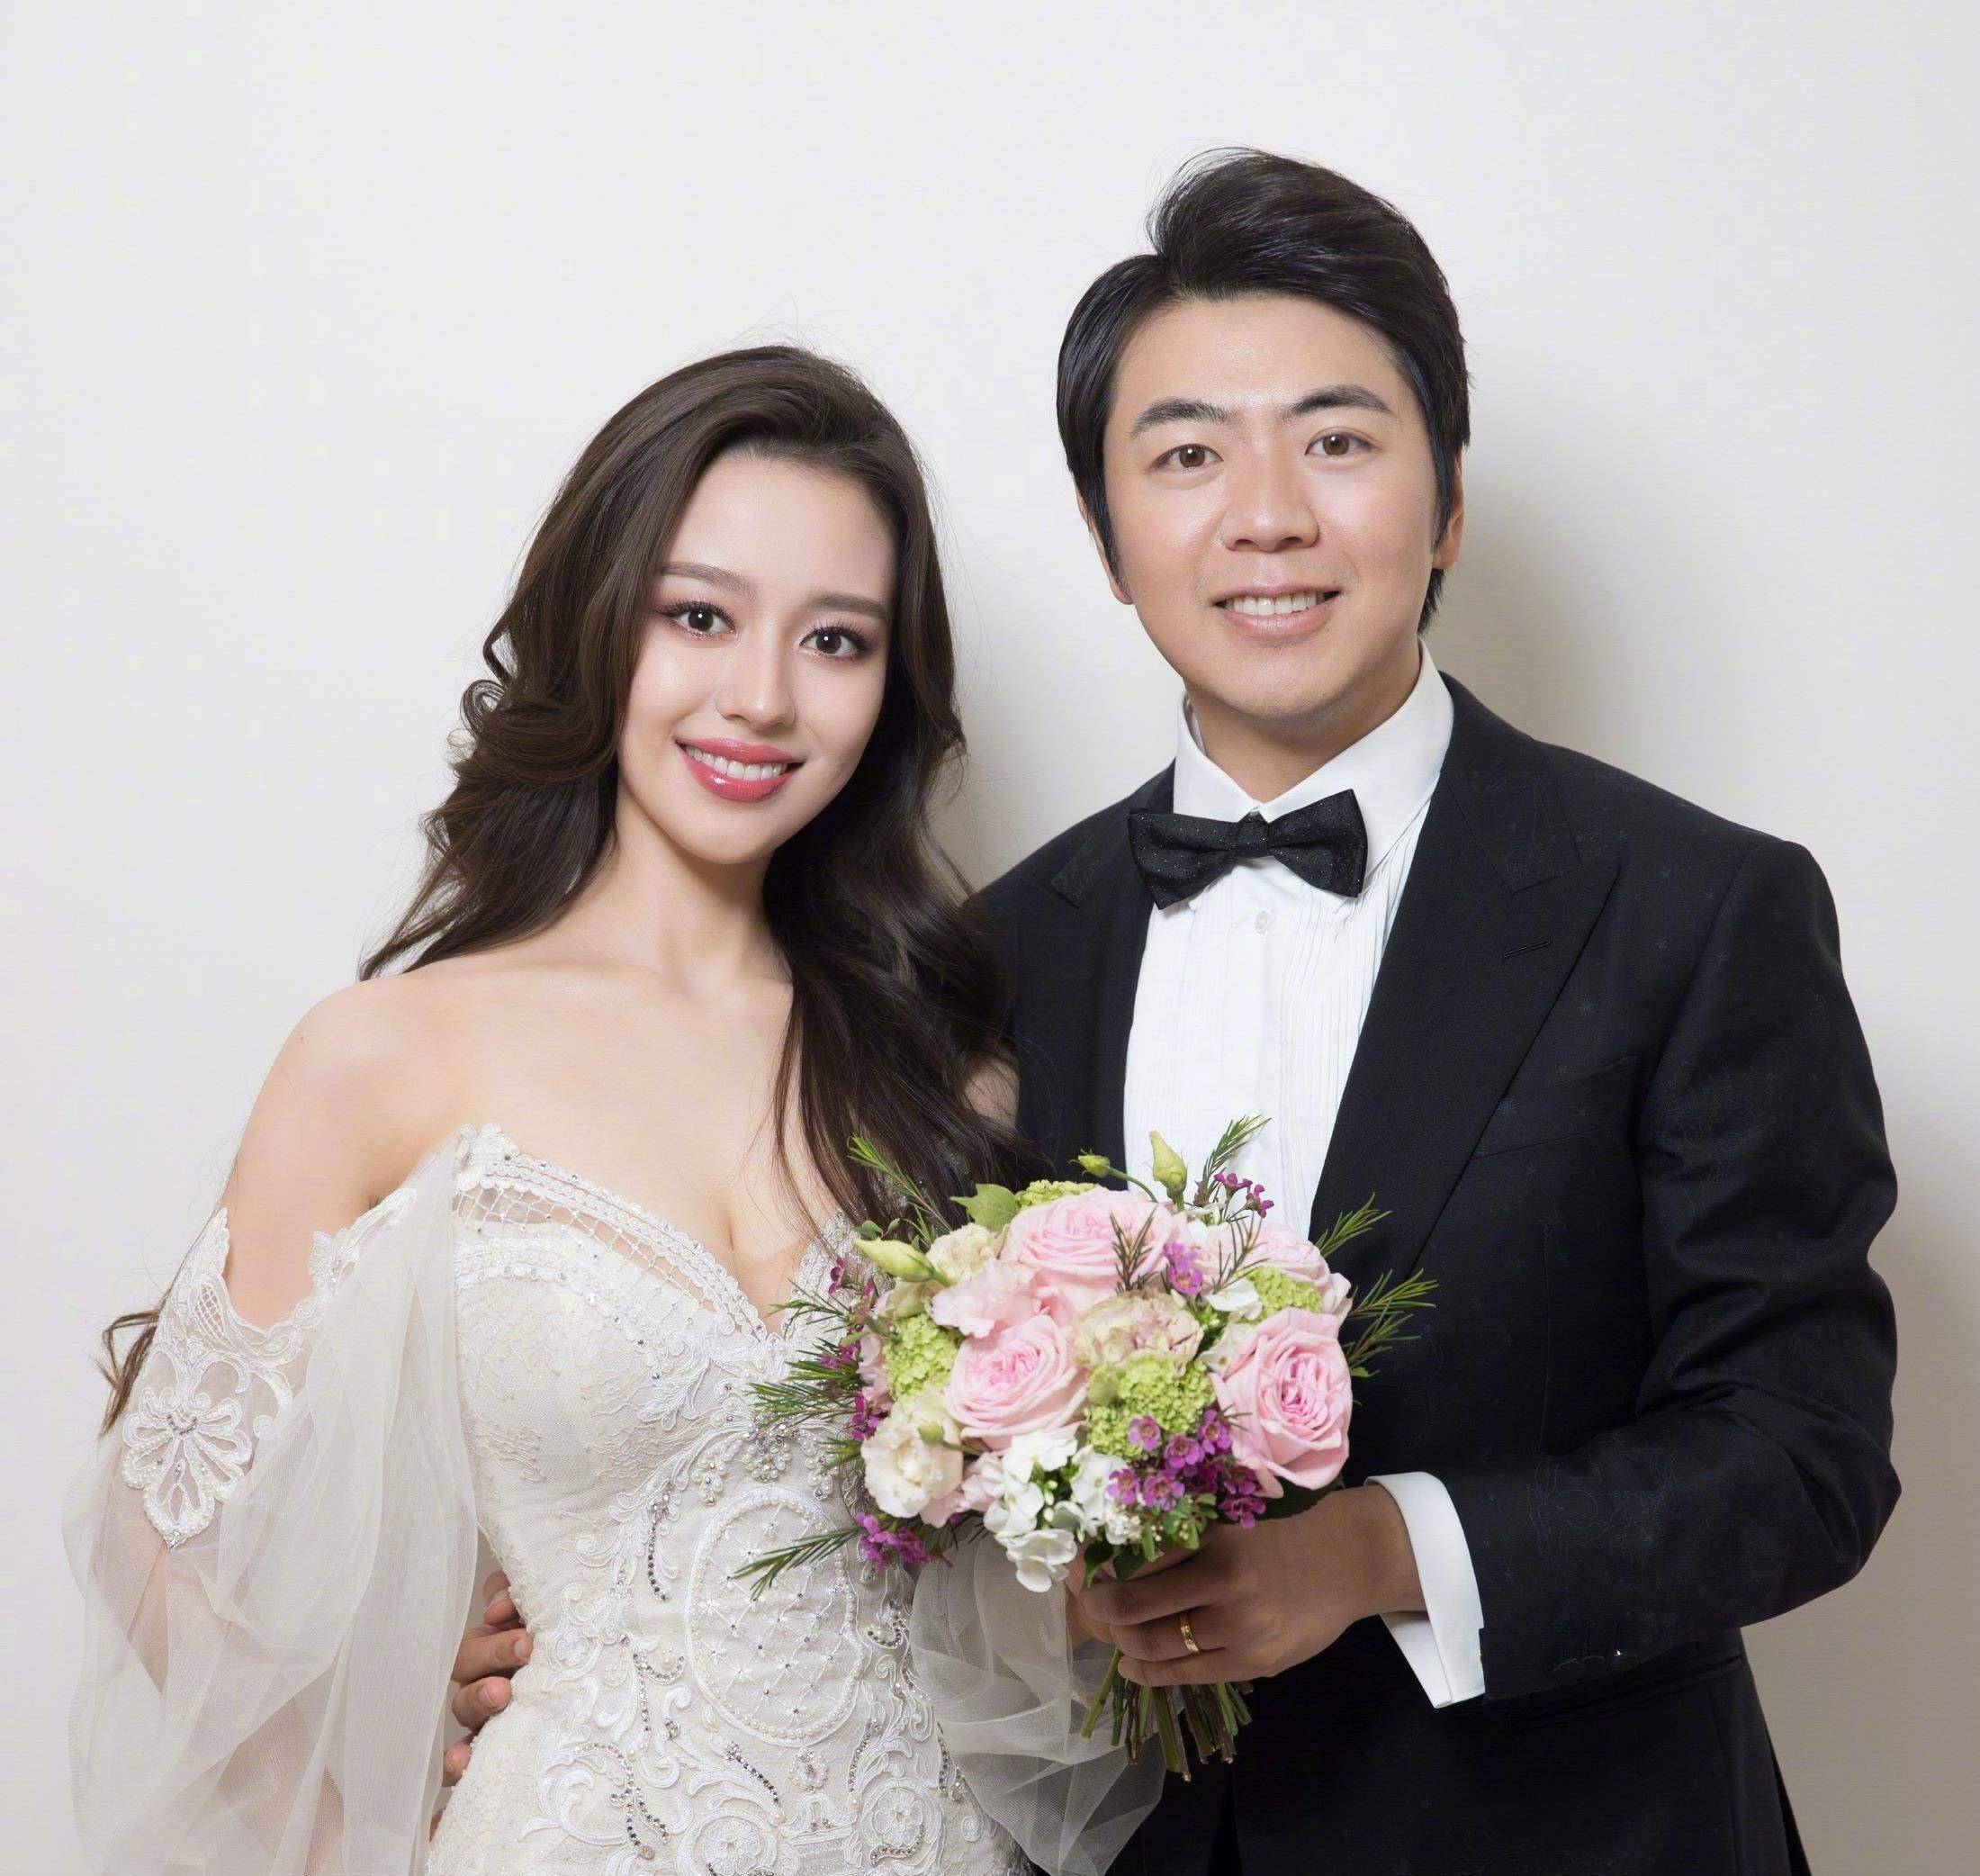 郎朗晒出九张婚纱照,宣布已与德韩混血女钢琴演奏者吉娜·爱丽丝结婚